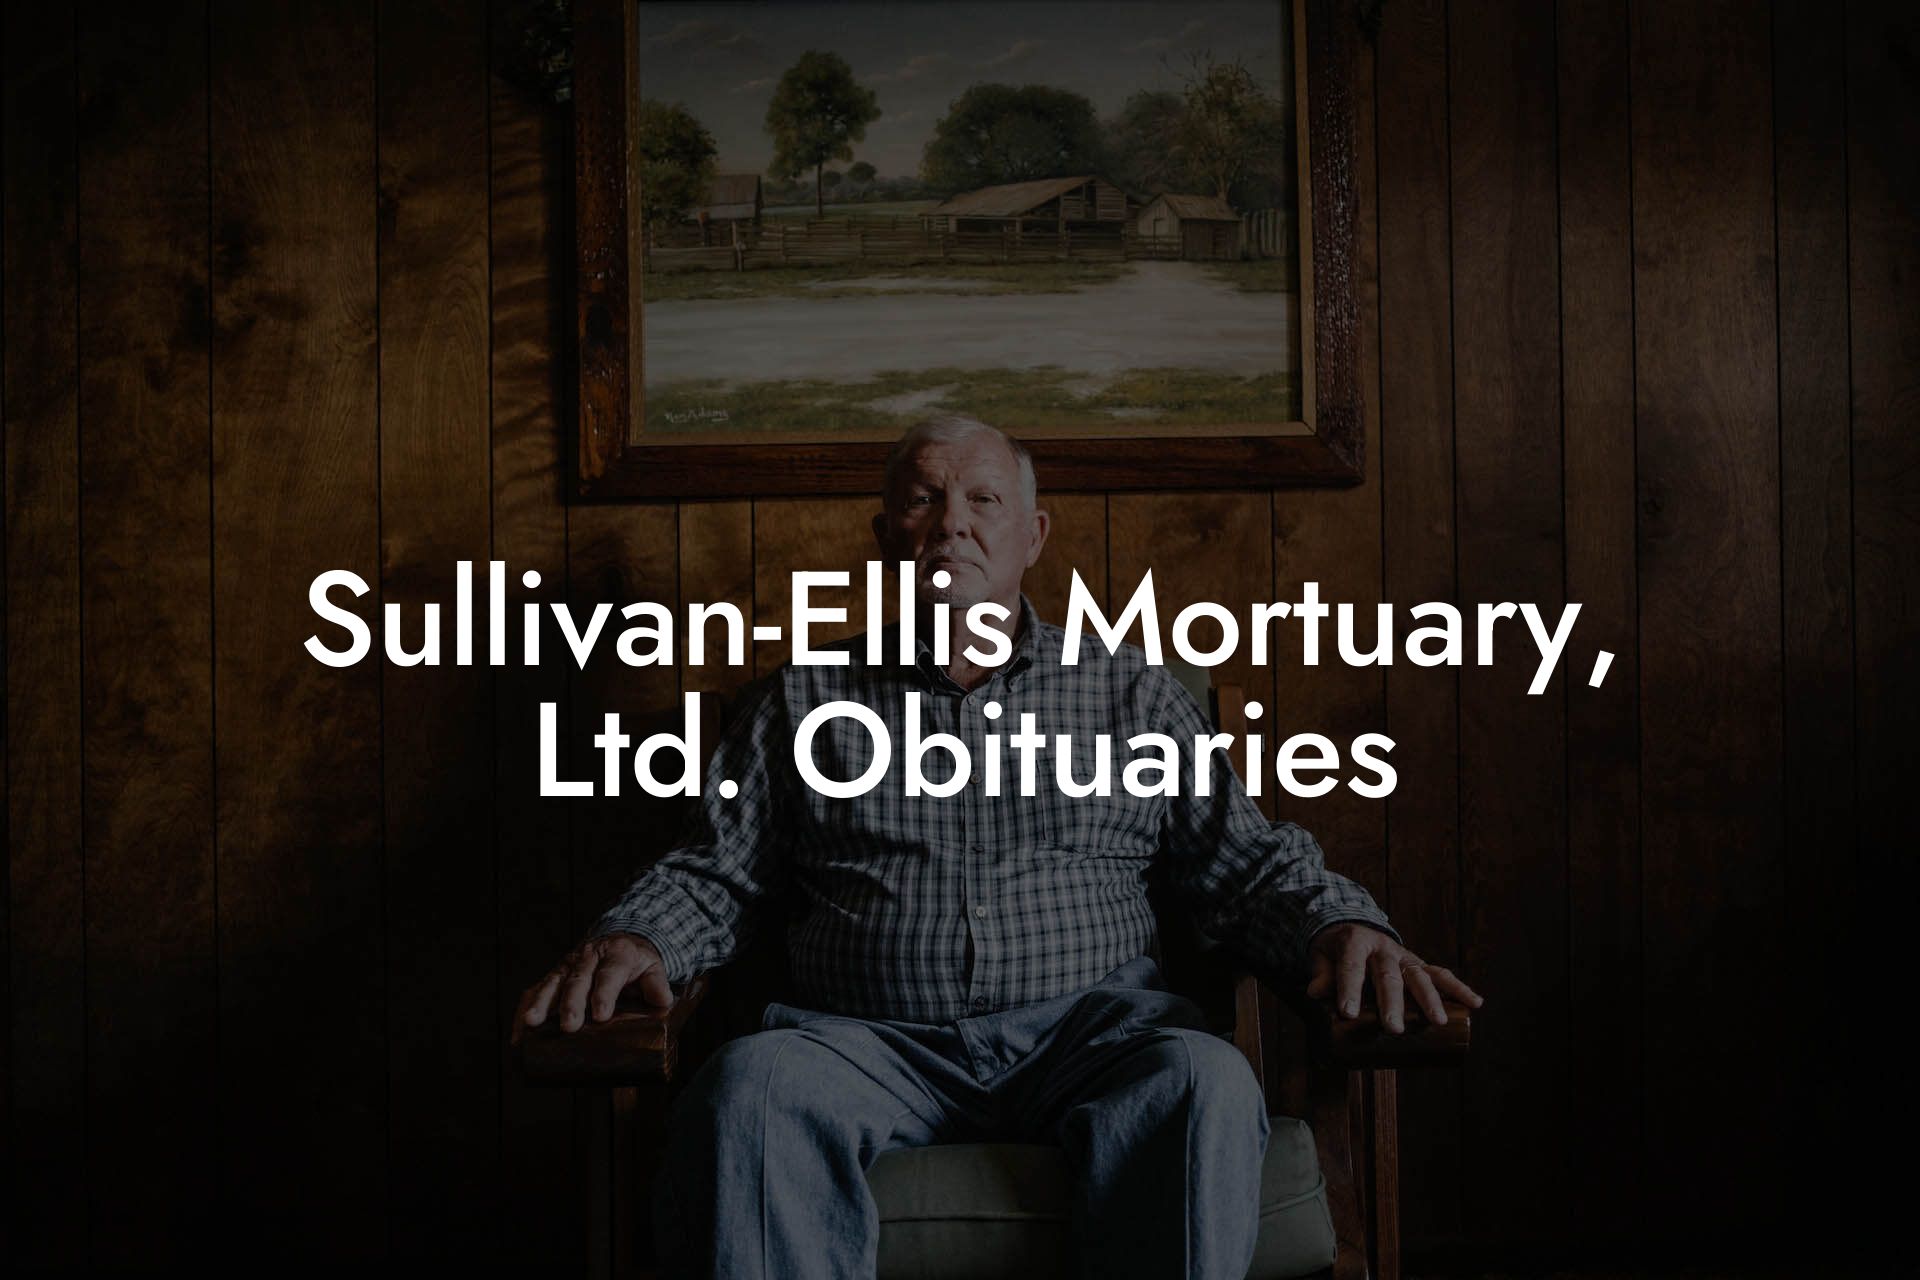 Sullivan-Ellis Mortuary, Ltd. Obituaries